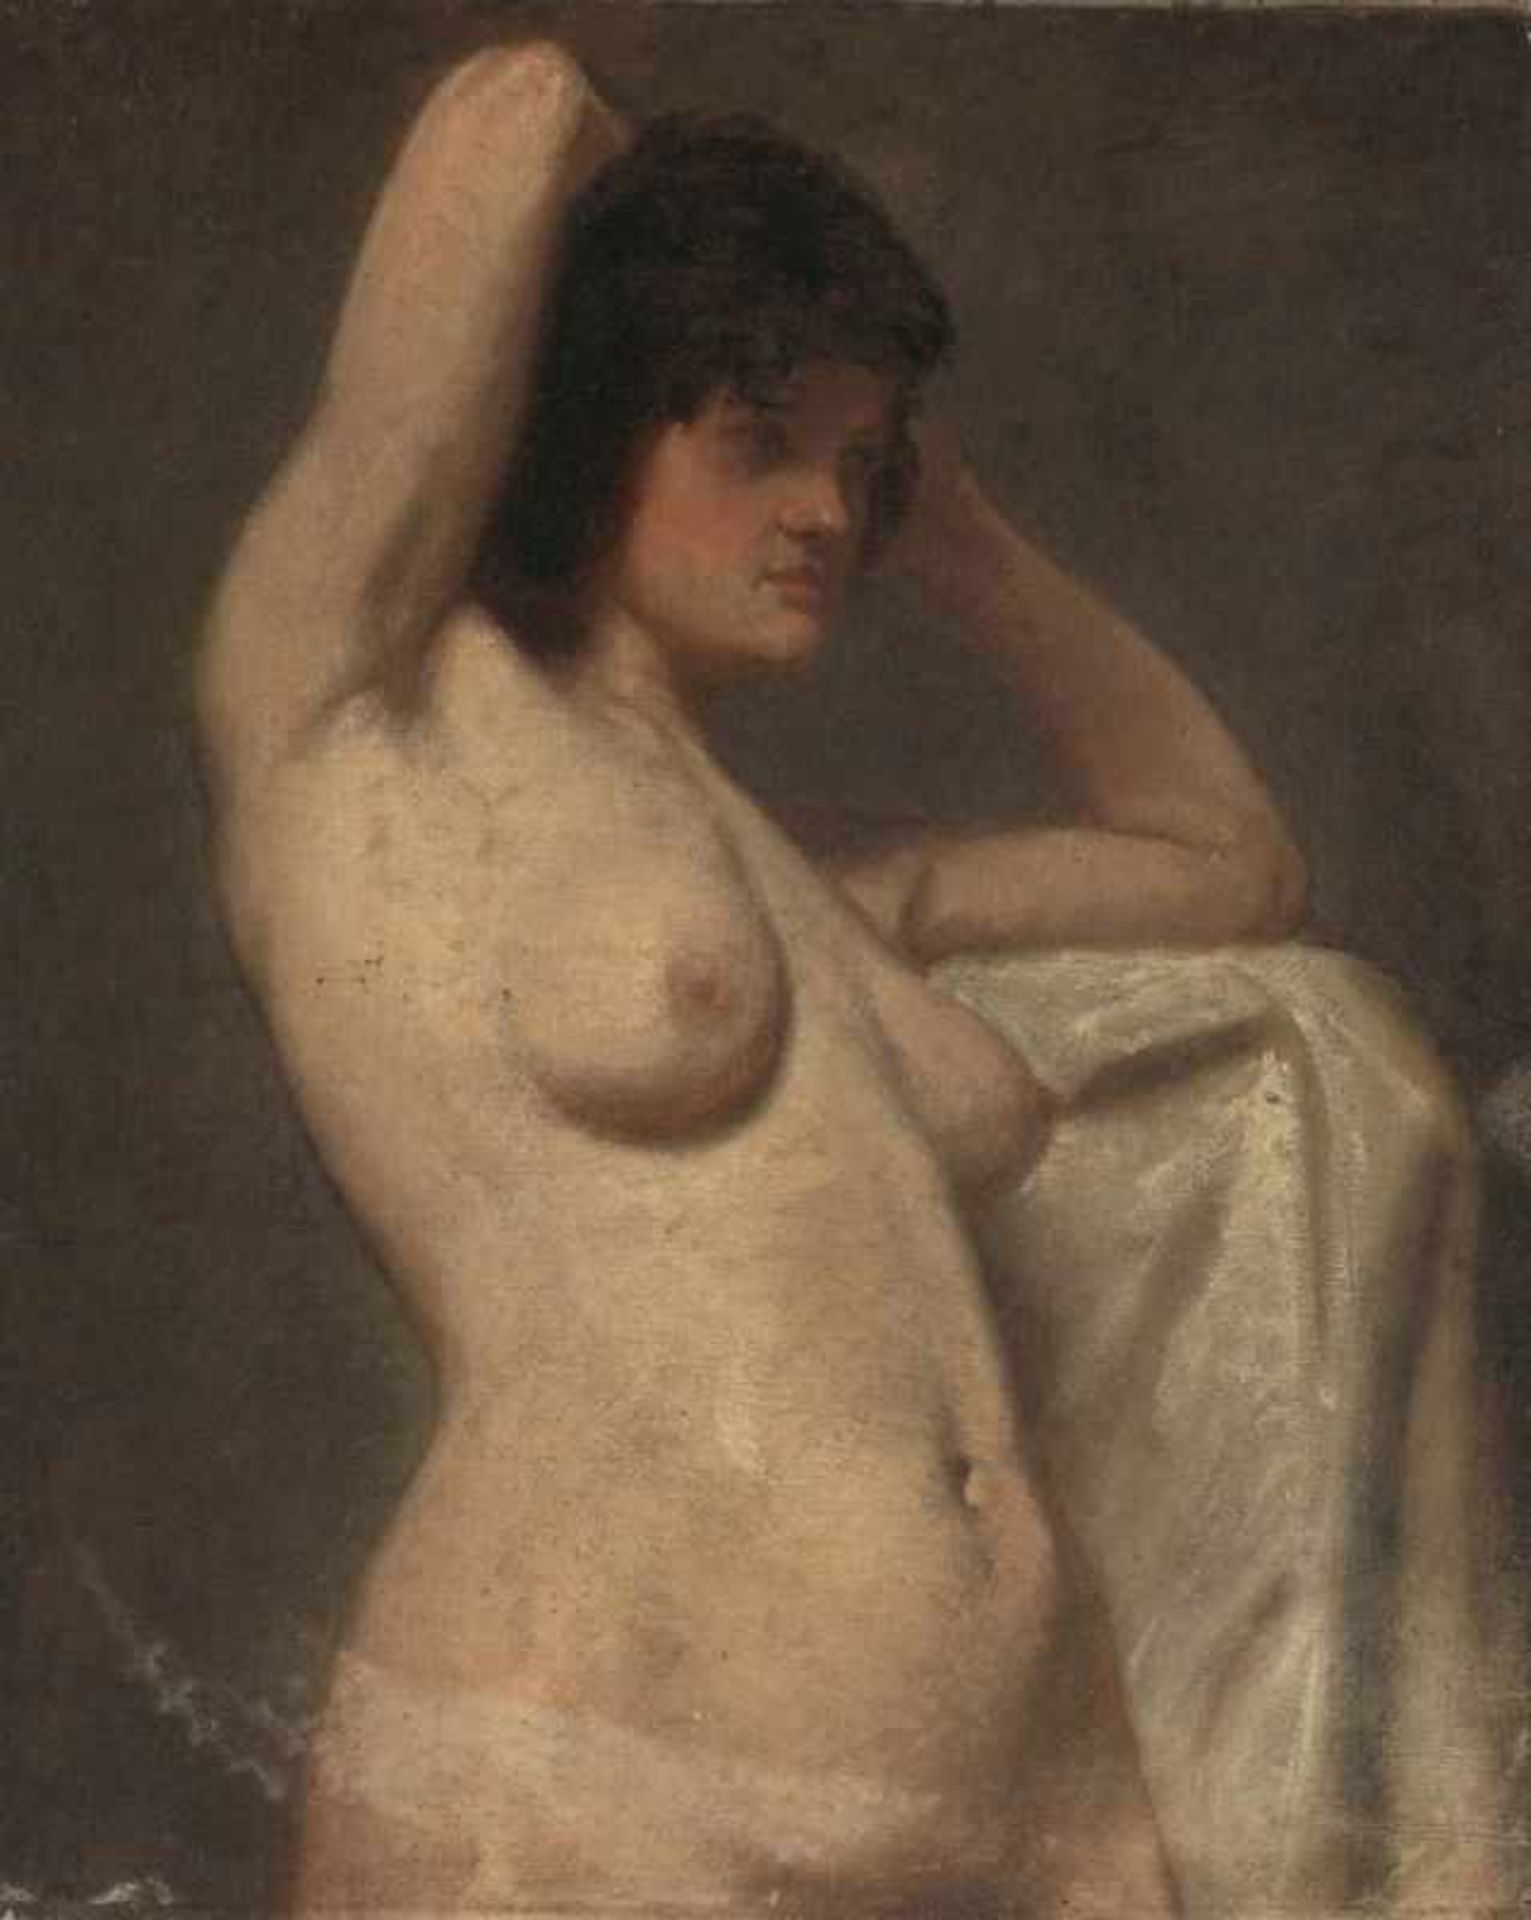 Künstler um 1900 - Weiblicher Halbakt - Öl/Lwd. Doubl. 64,5 x 52 cm. Rest.